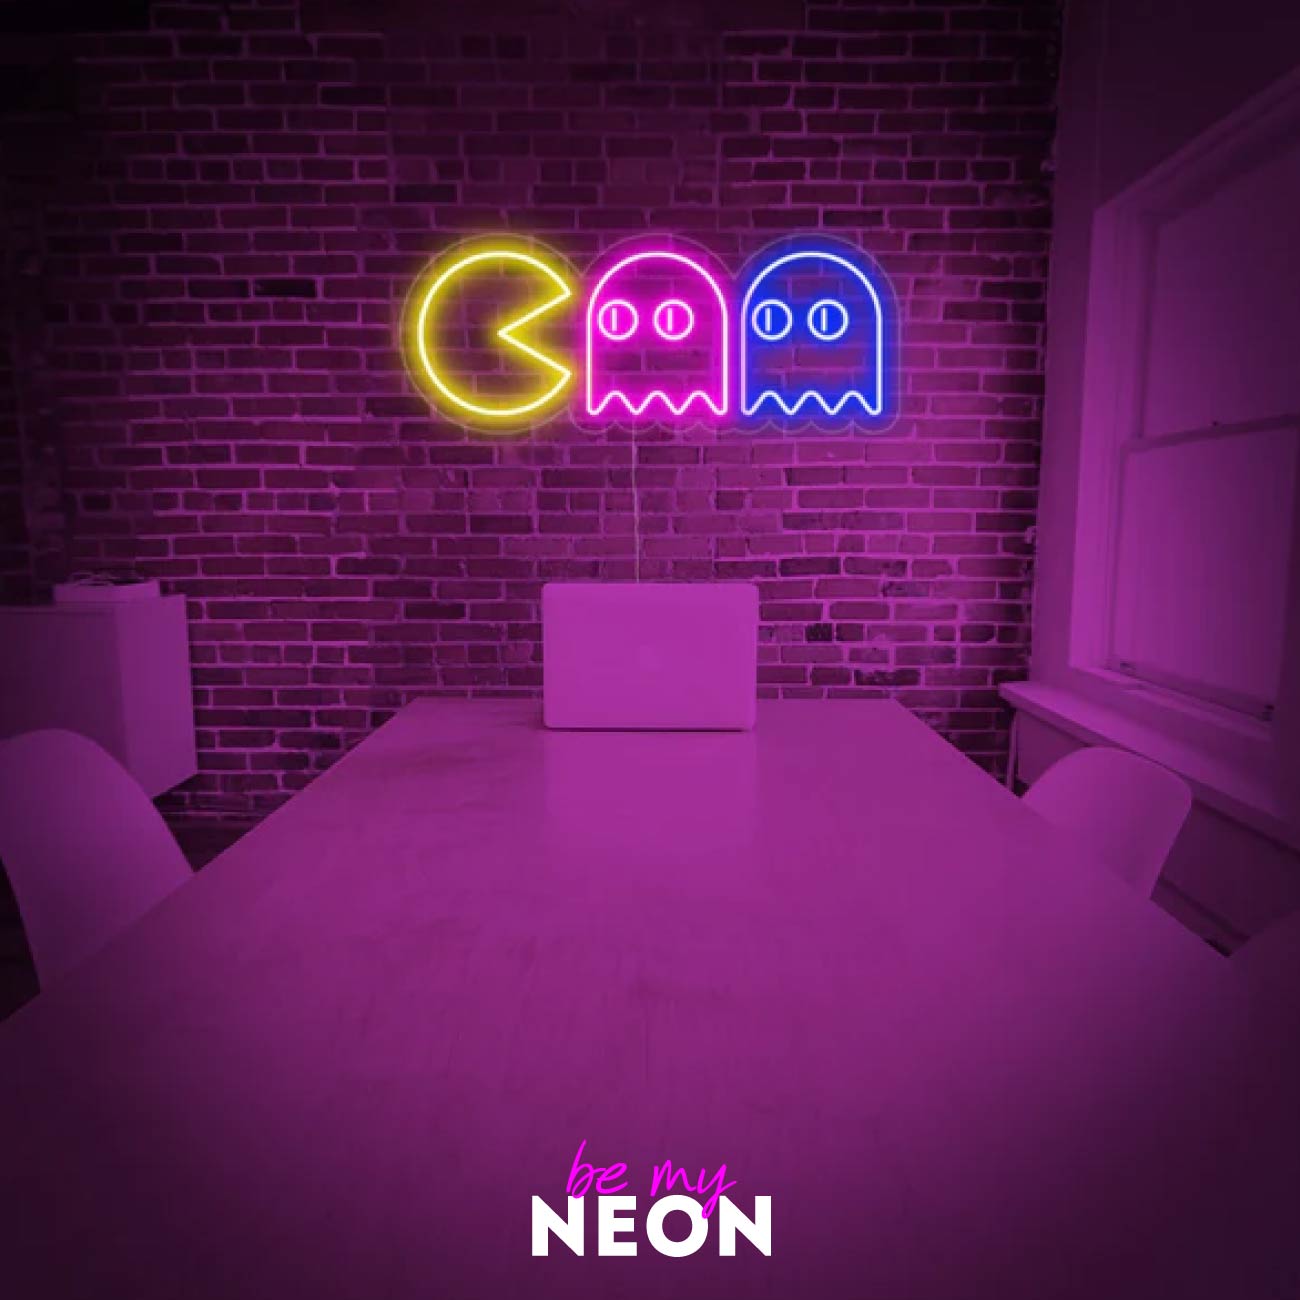 "PACKMAN - Gaming" Leuchtmotiv aus LED Neon